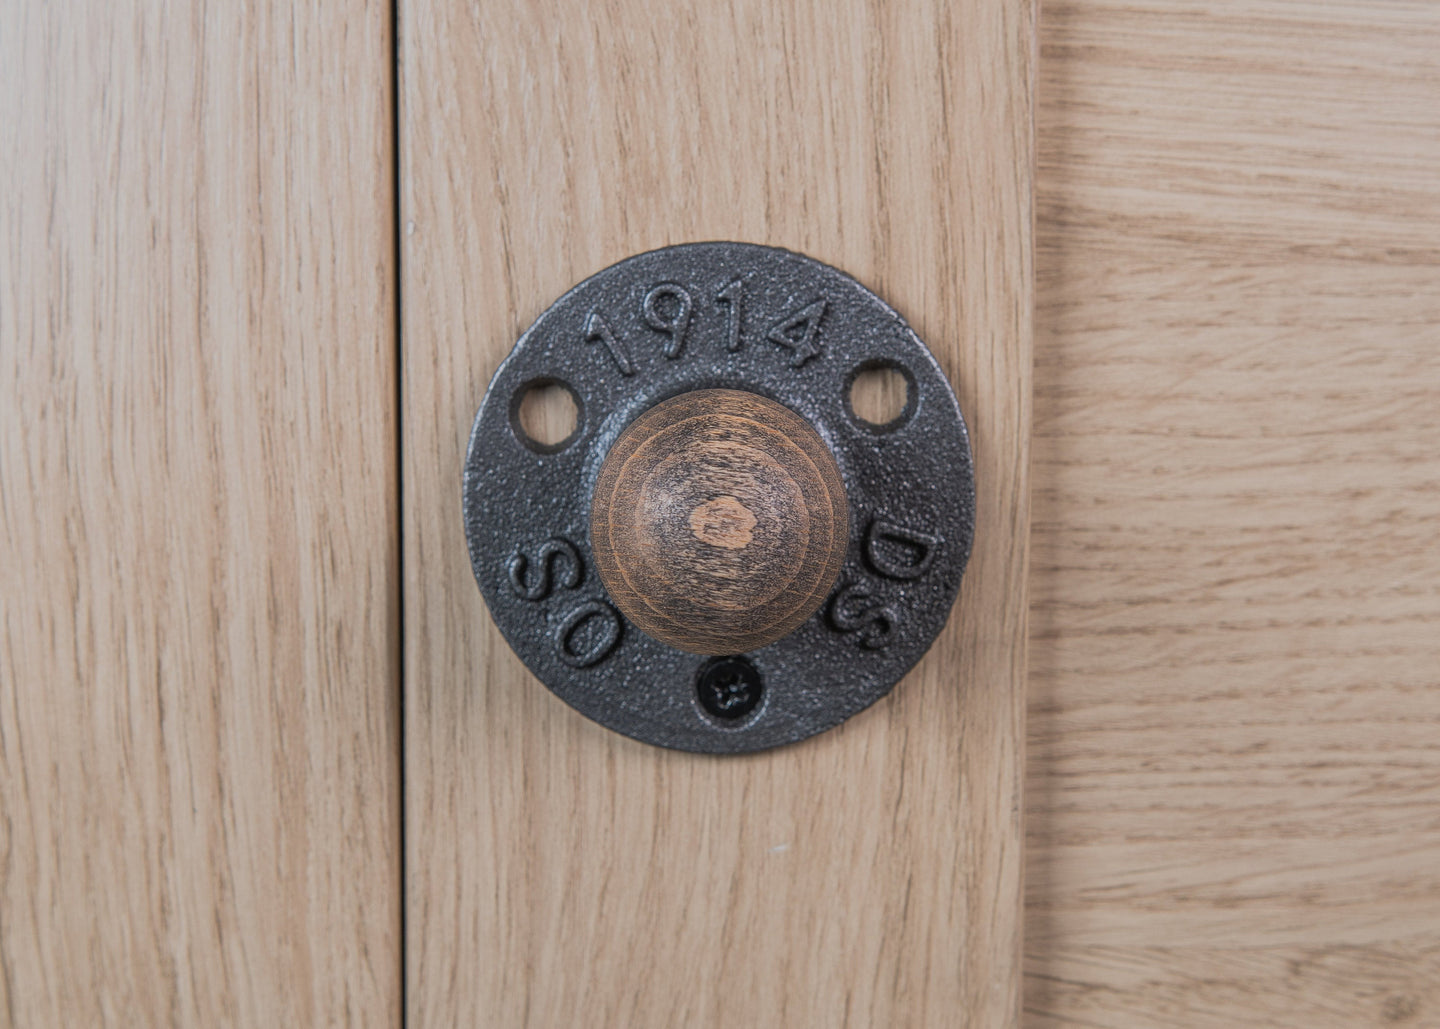 Industrial cast iron & wood door knob